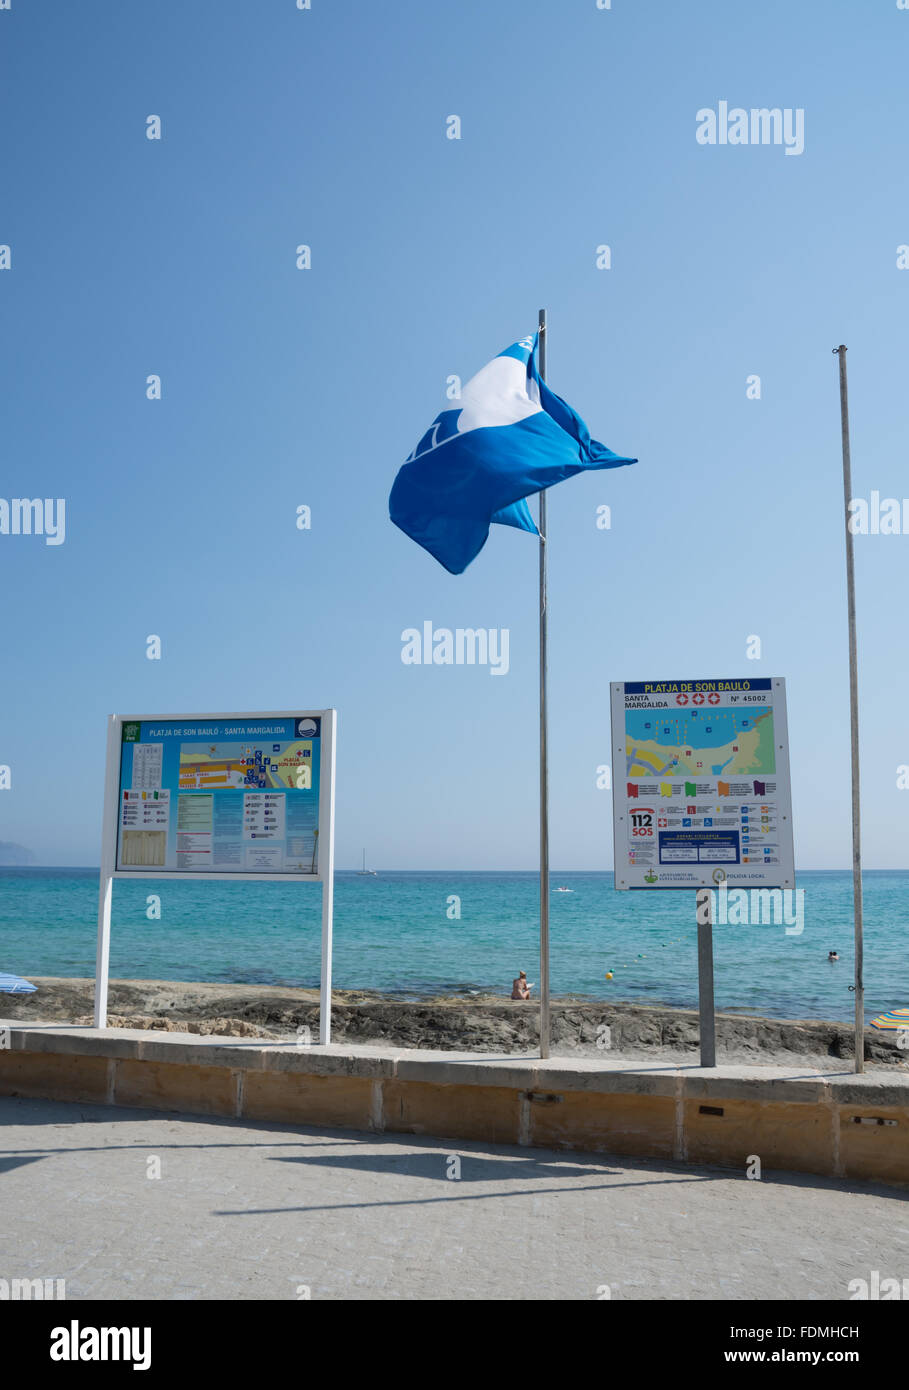 Spiaggia bandiera blu su una soleggiata giornata estiva in luglio Foto Stock